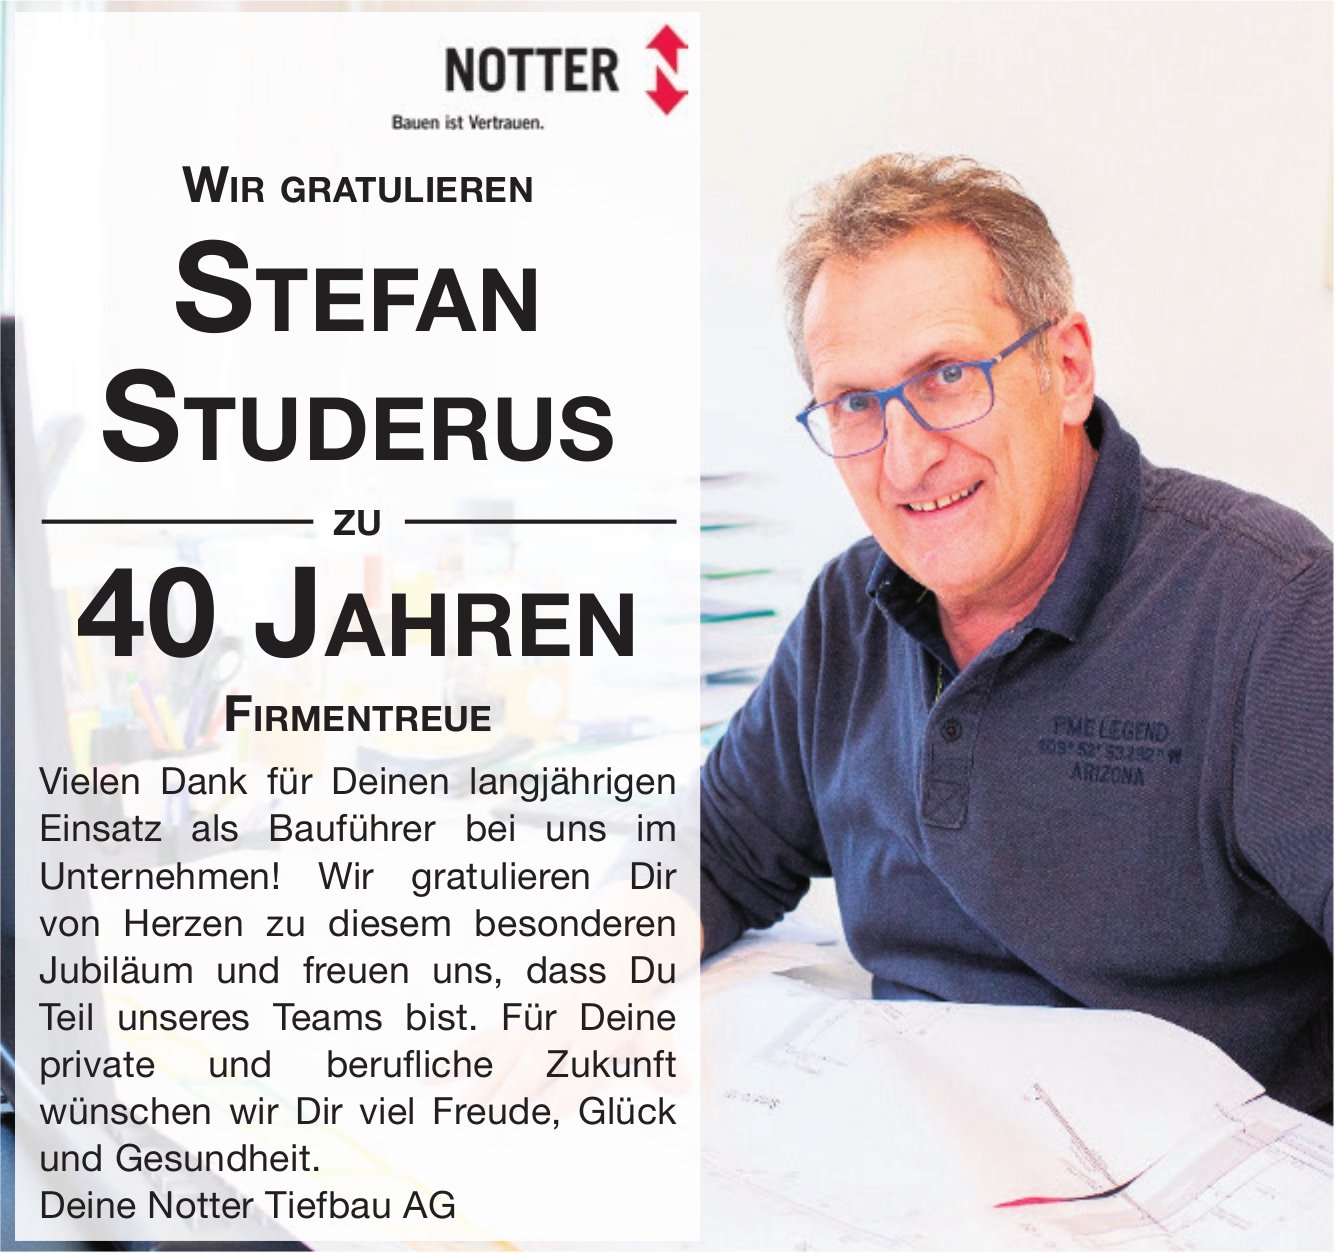 Notter Tiefbau AG, Wir gratulieren Stefan Studerus zu 40 Jahren Firmentreue